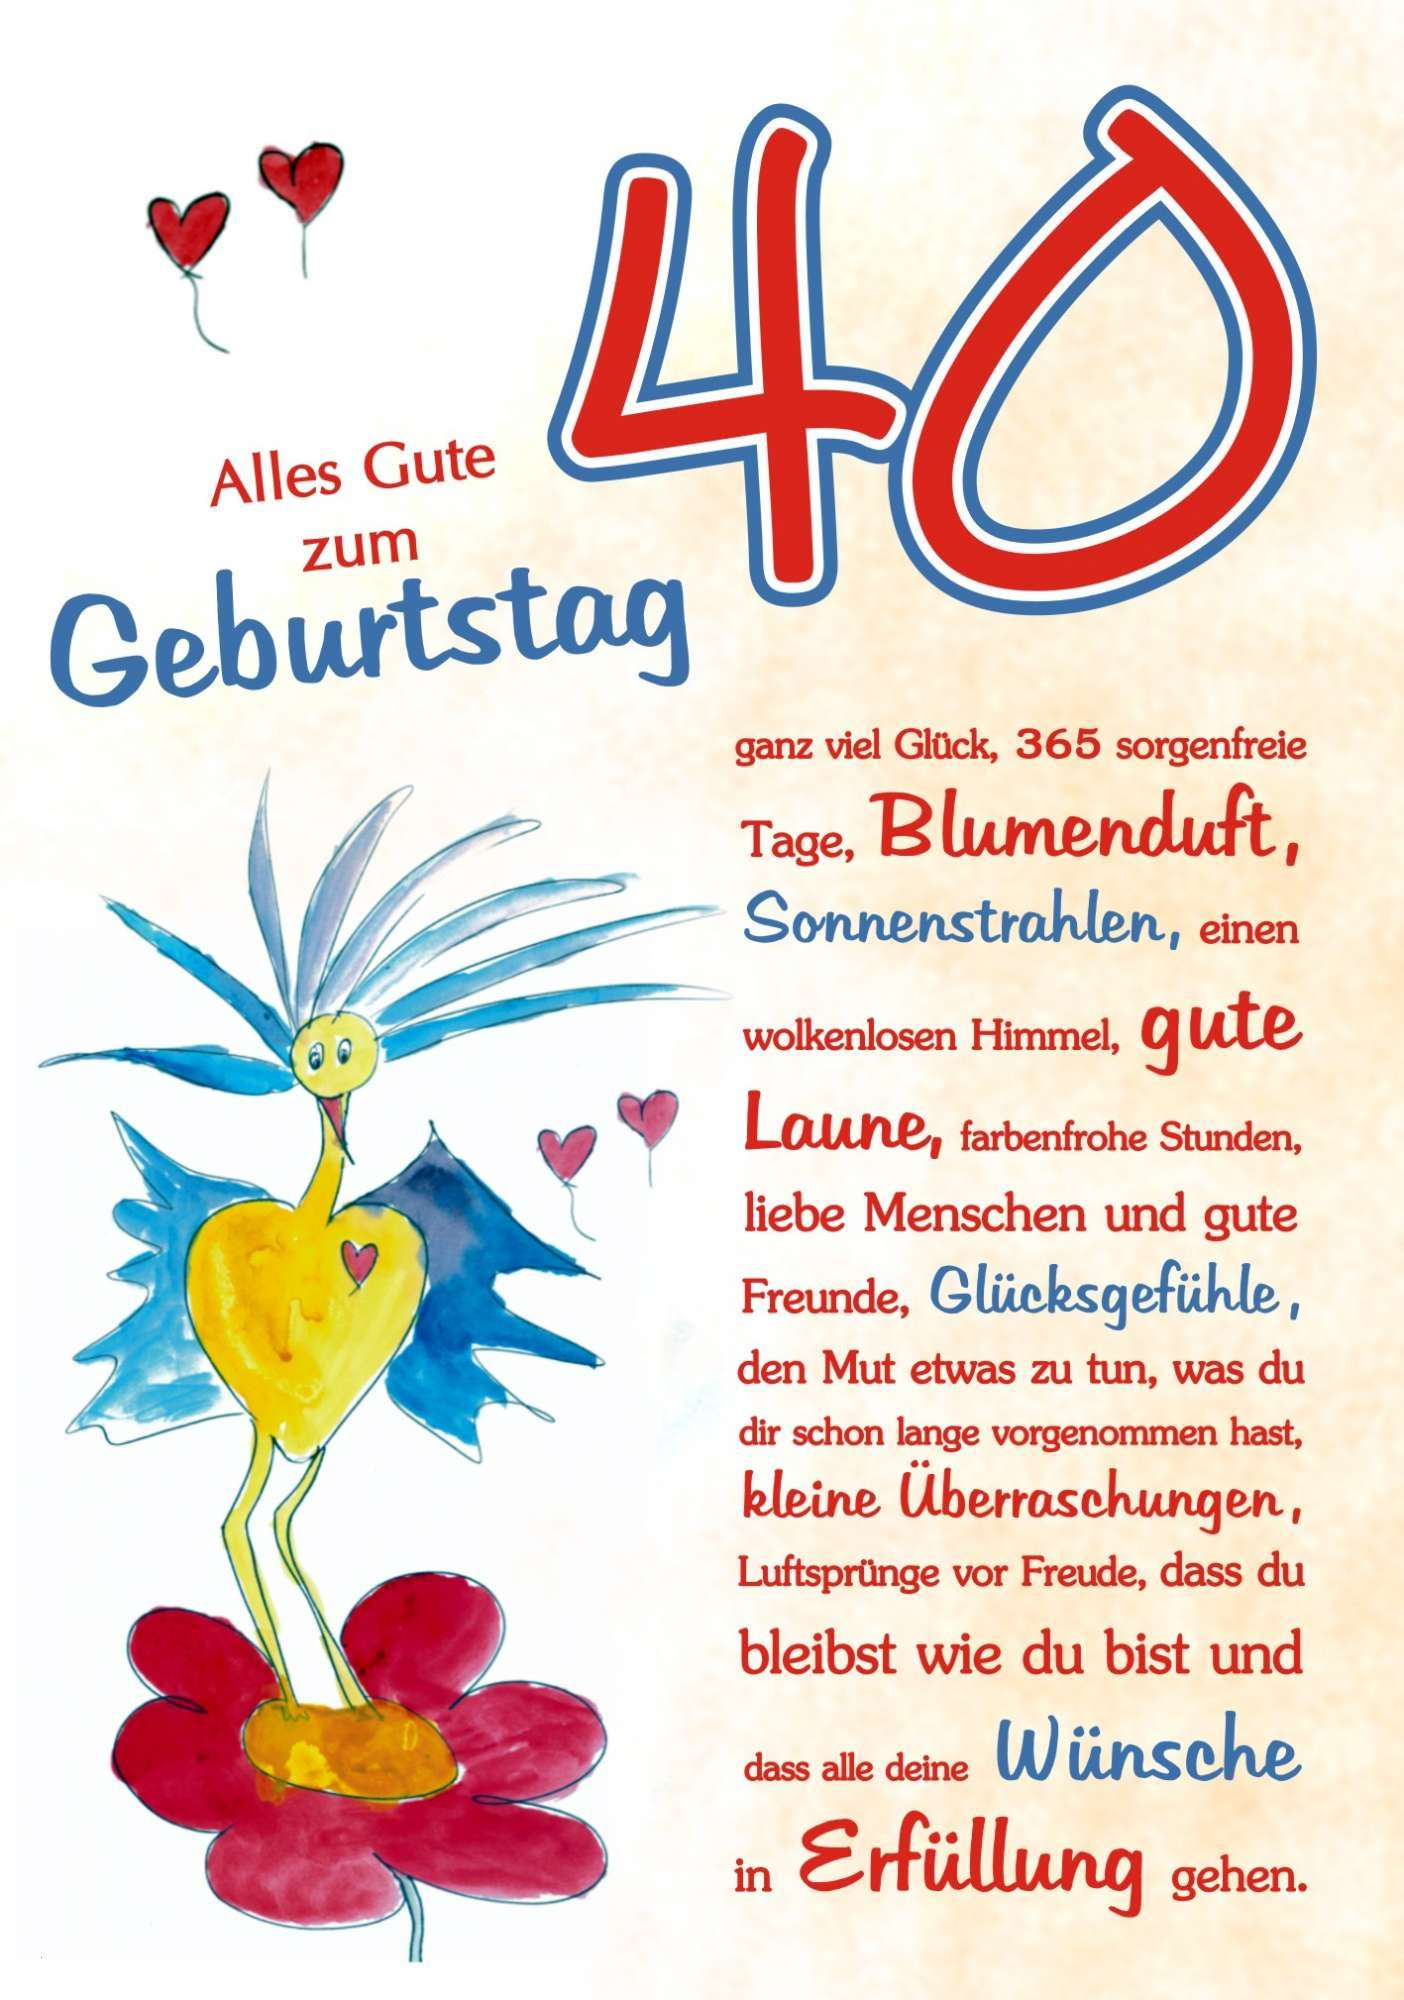 Geburtstagswünsche Stilvoll
 Karten Glückwünsche Luxus Geburtstagswünsche Zum 40